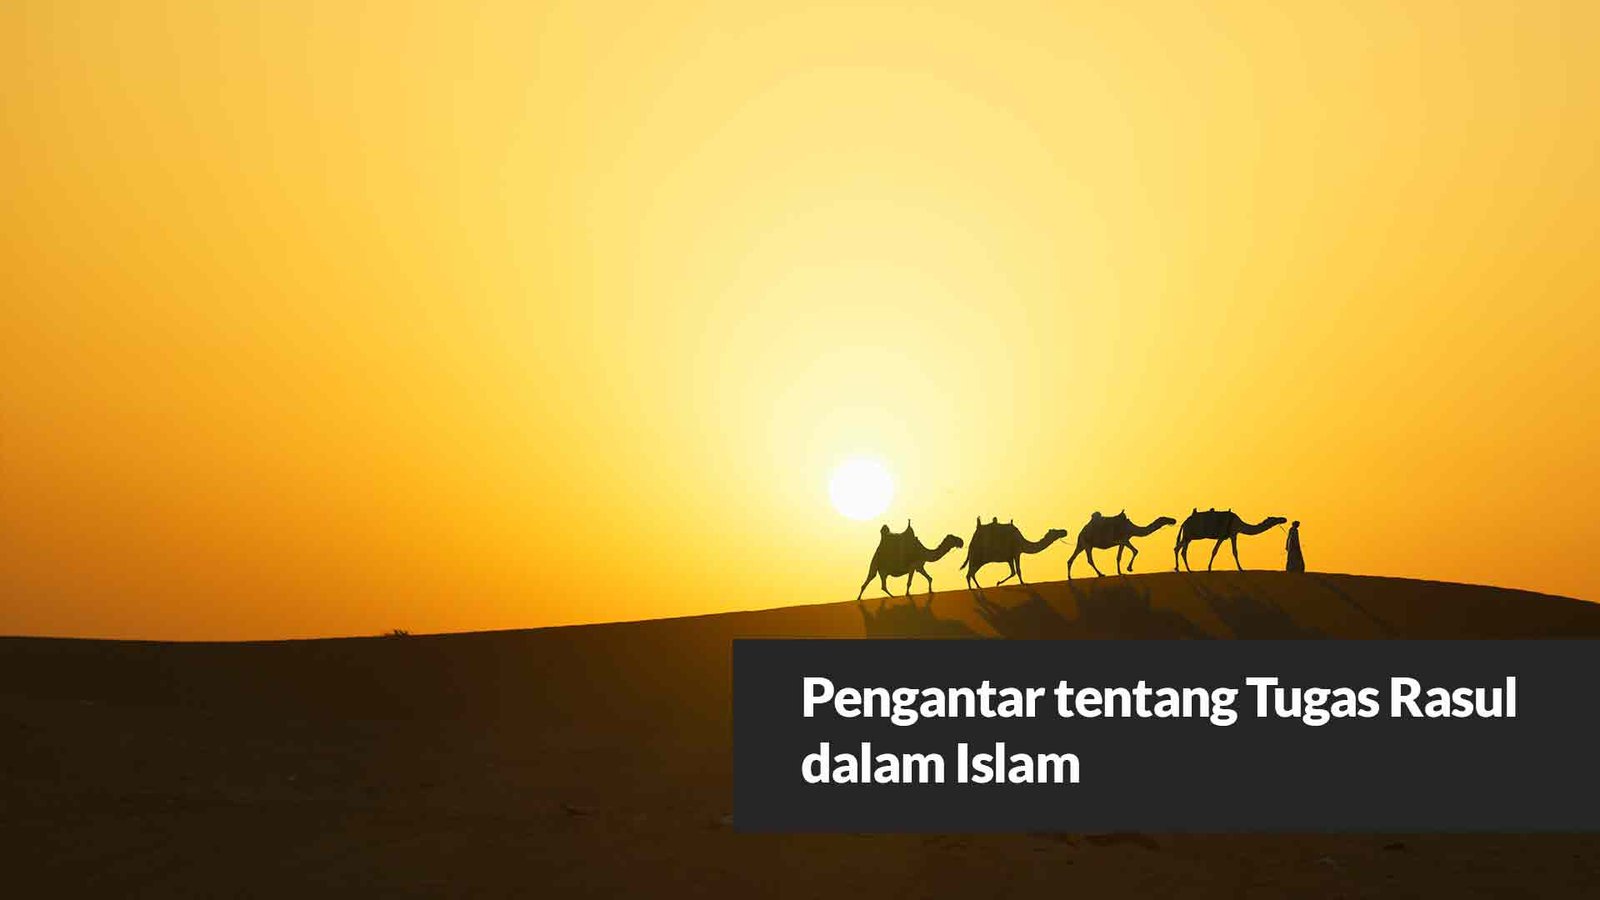 Pengantar tentang Tugas Rasul dalam Islam